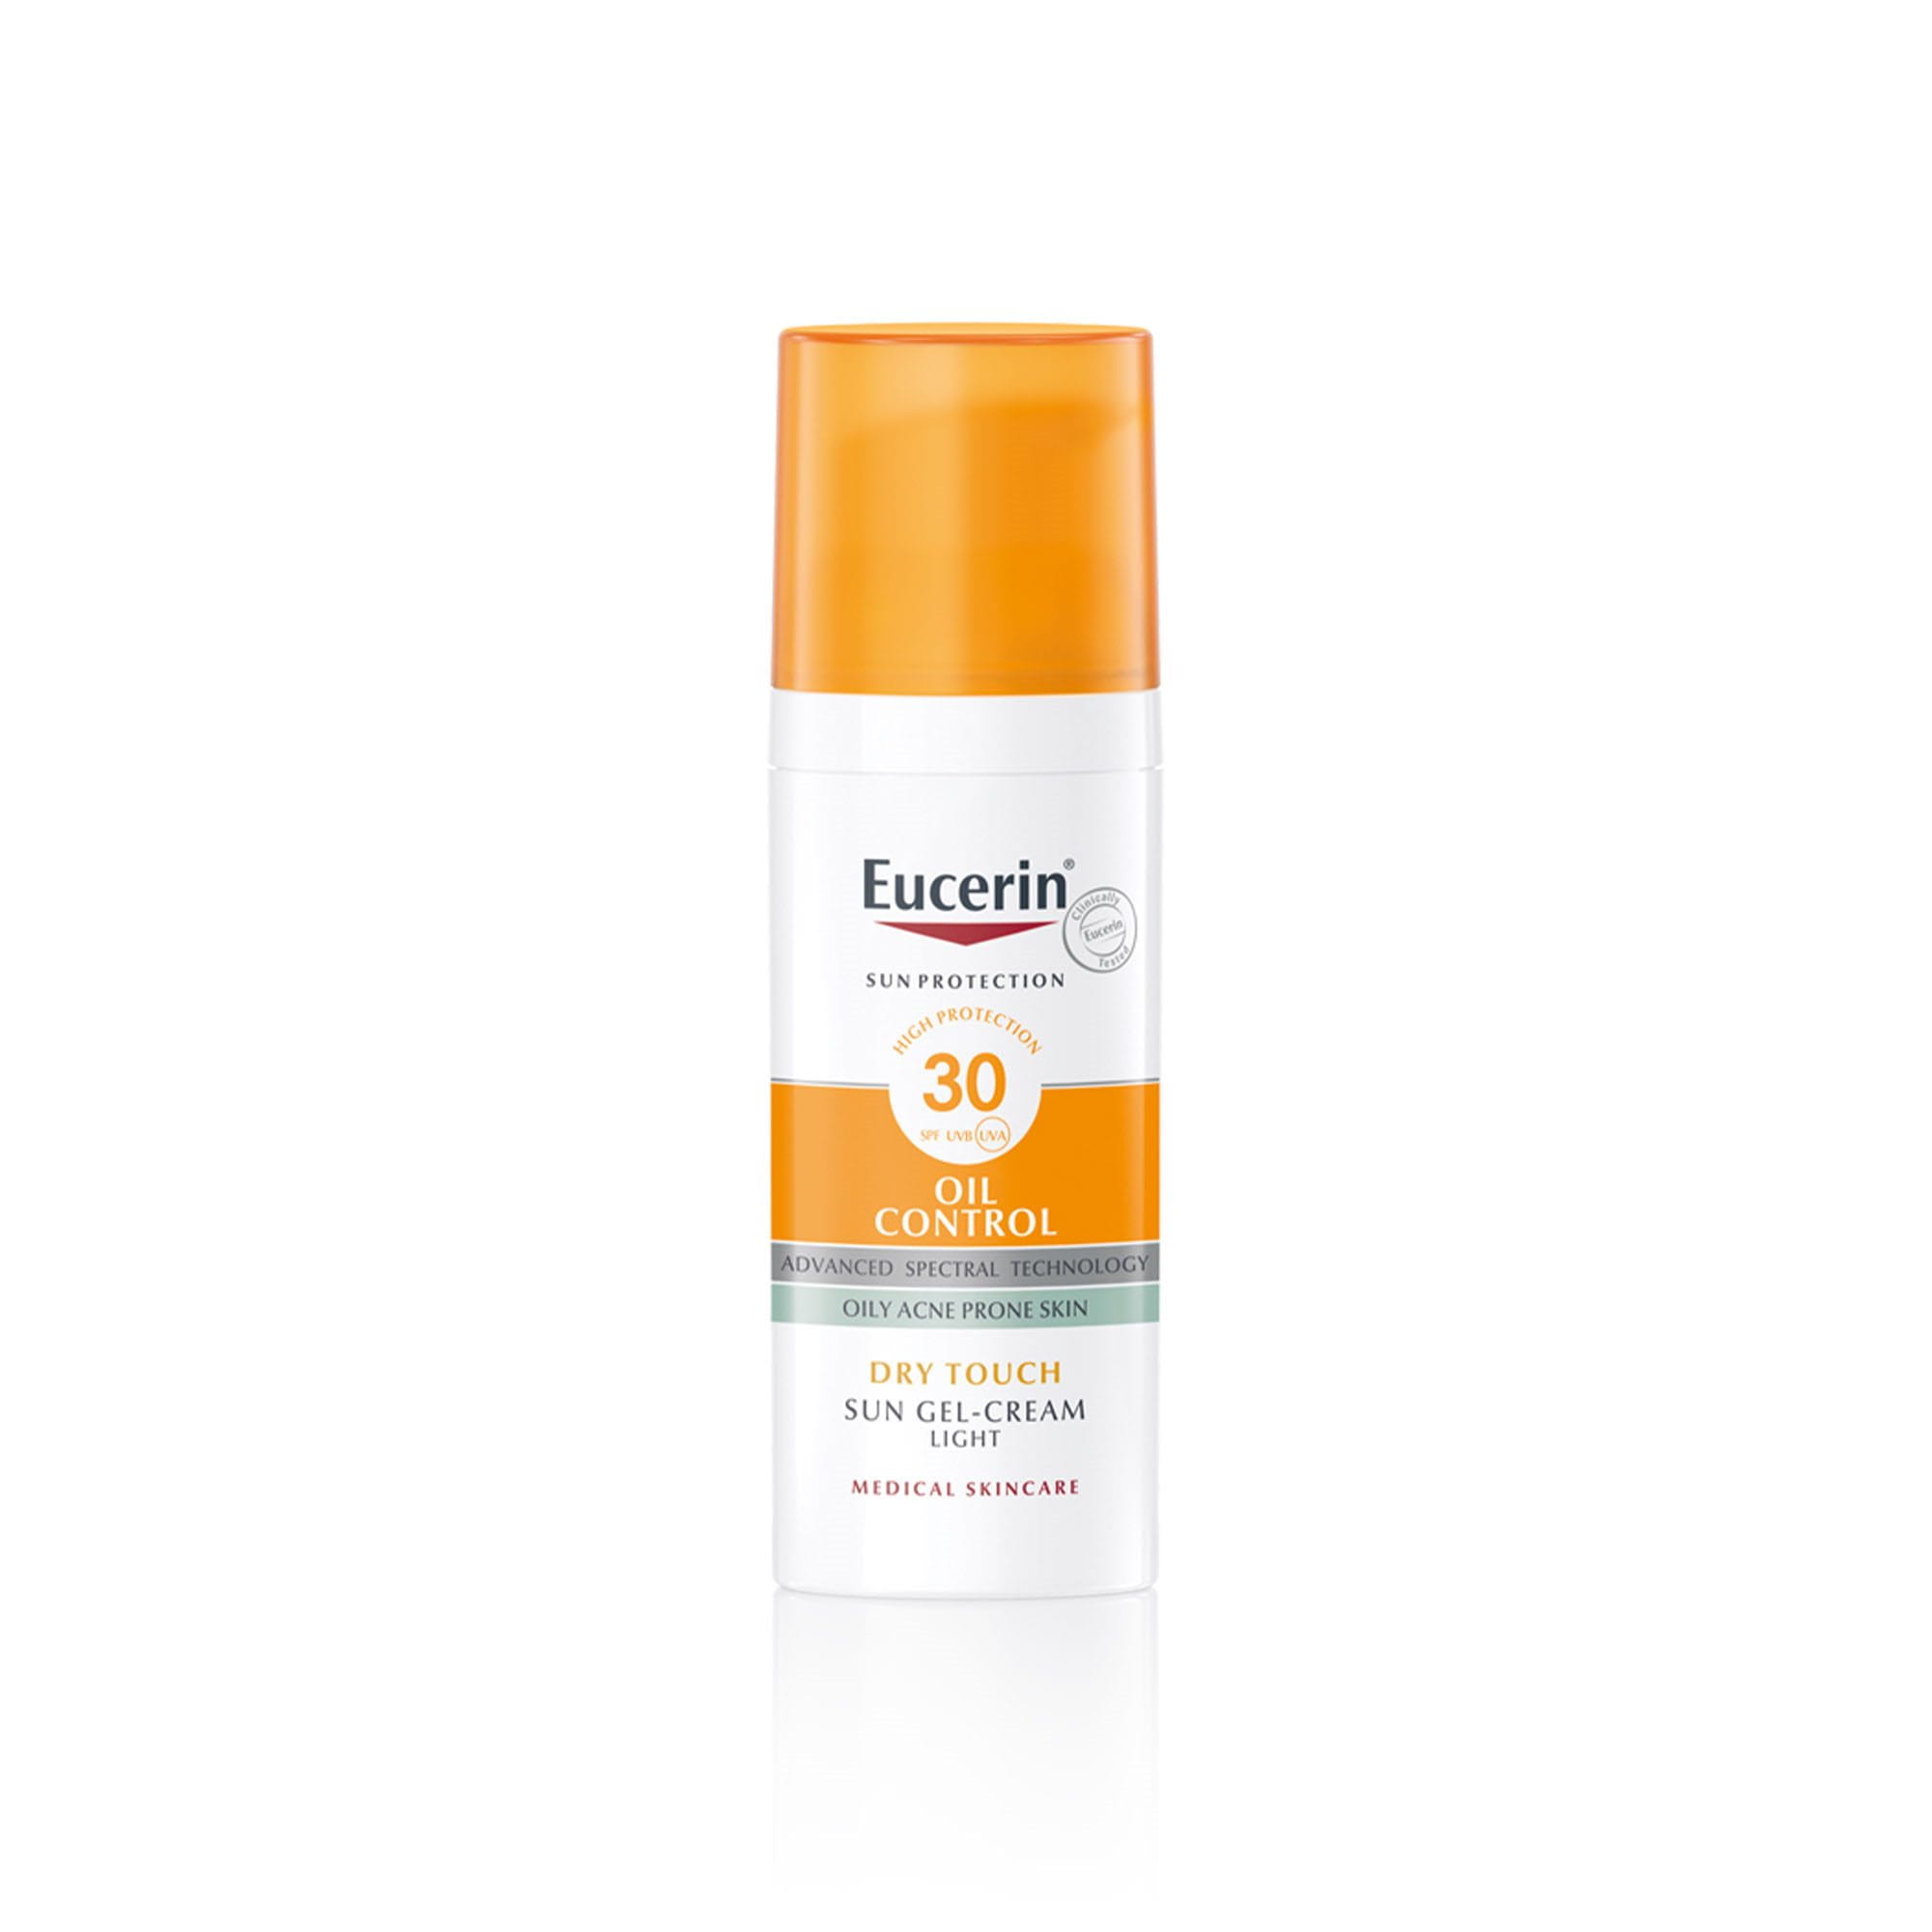 Sun Gel-Cream Oil Control SPF 30  sunscreen for oily, acne-prone